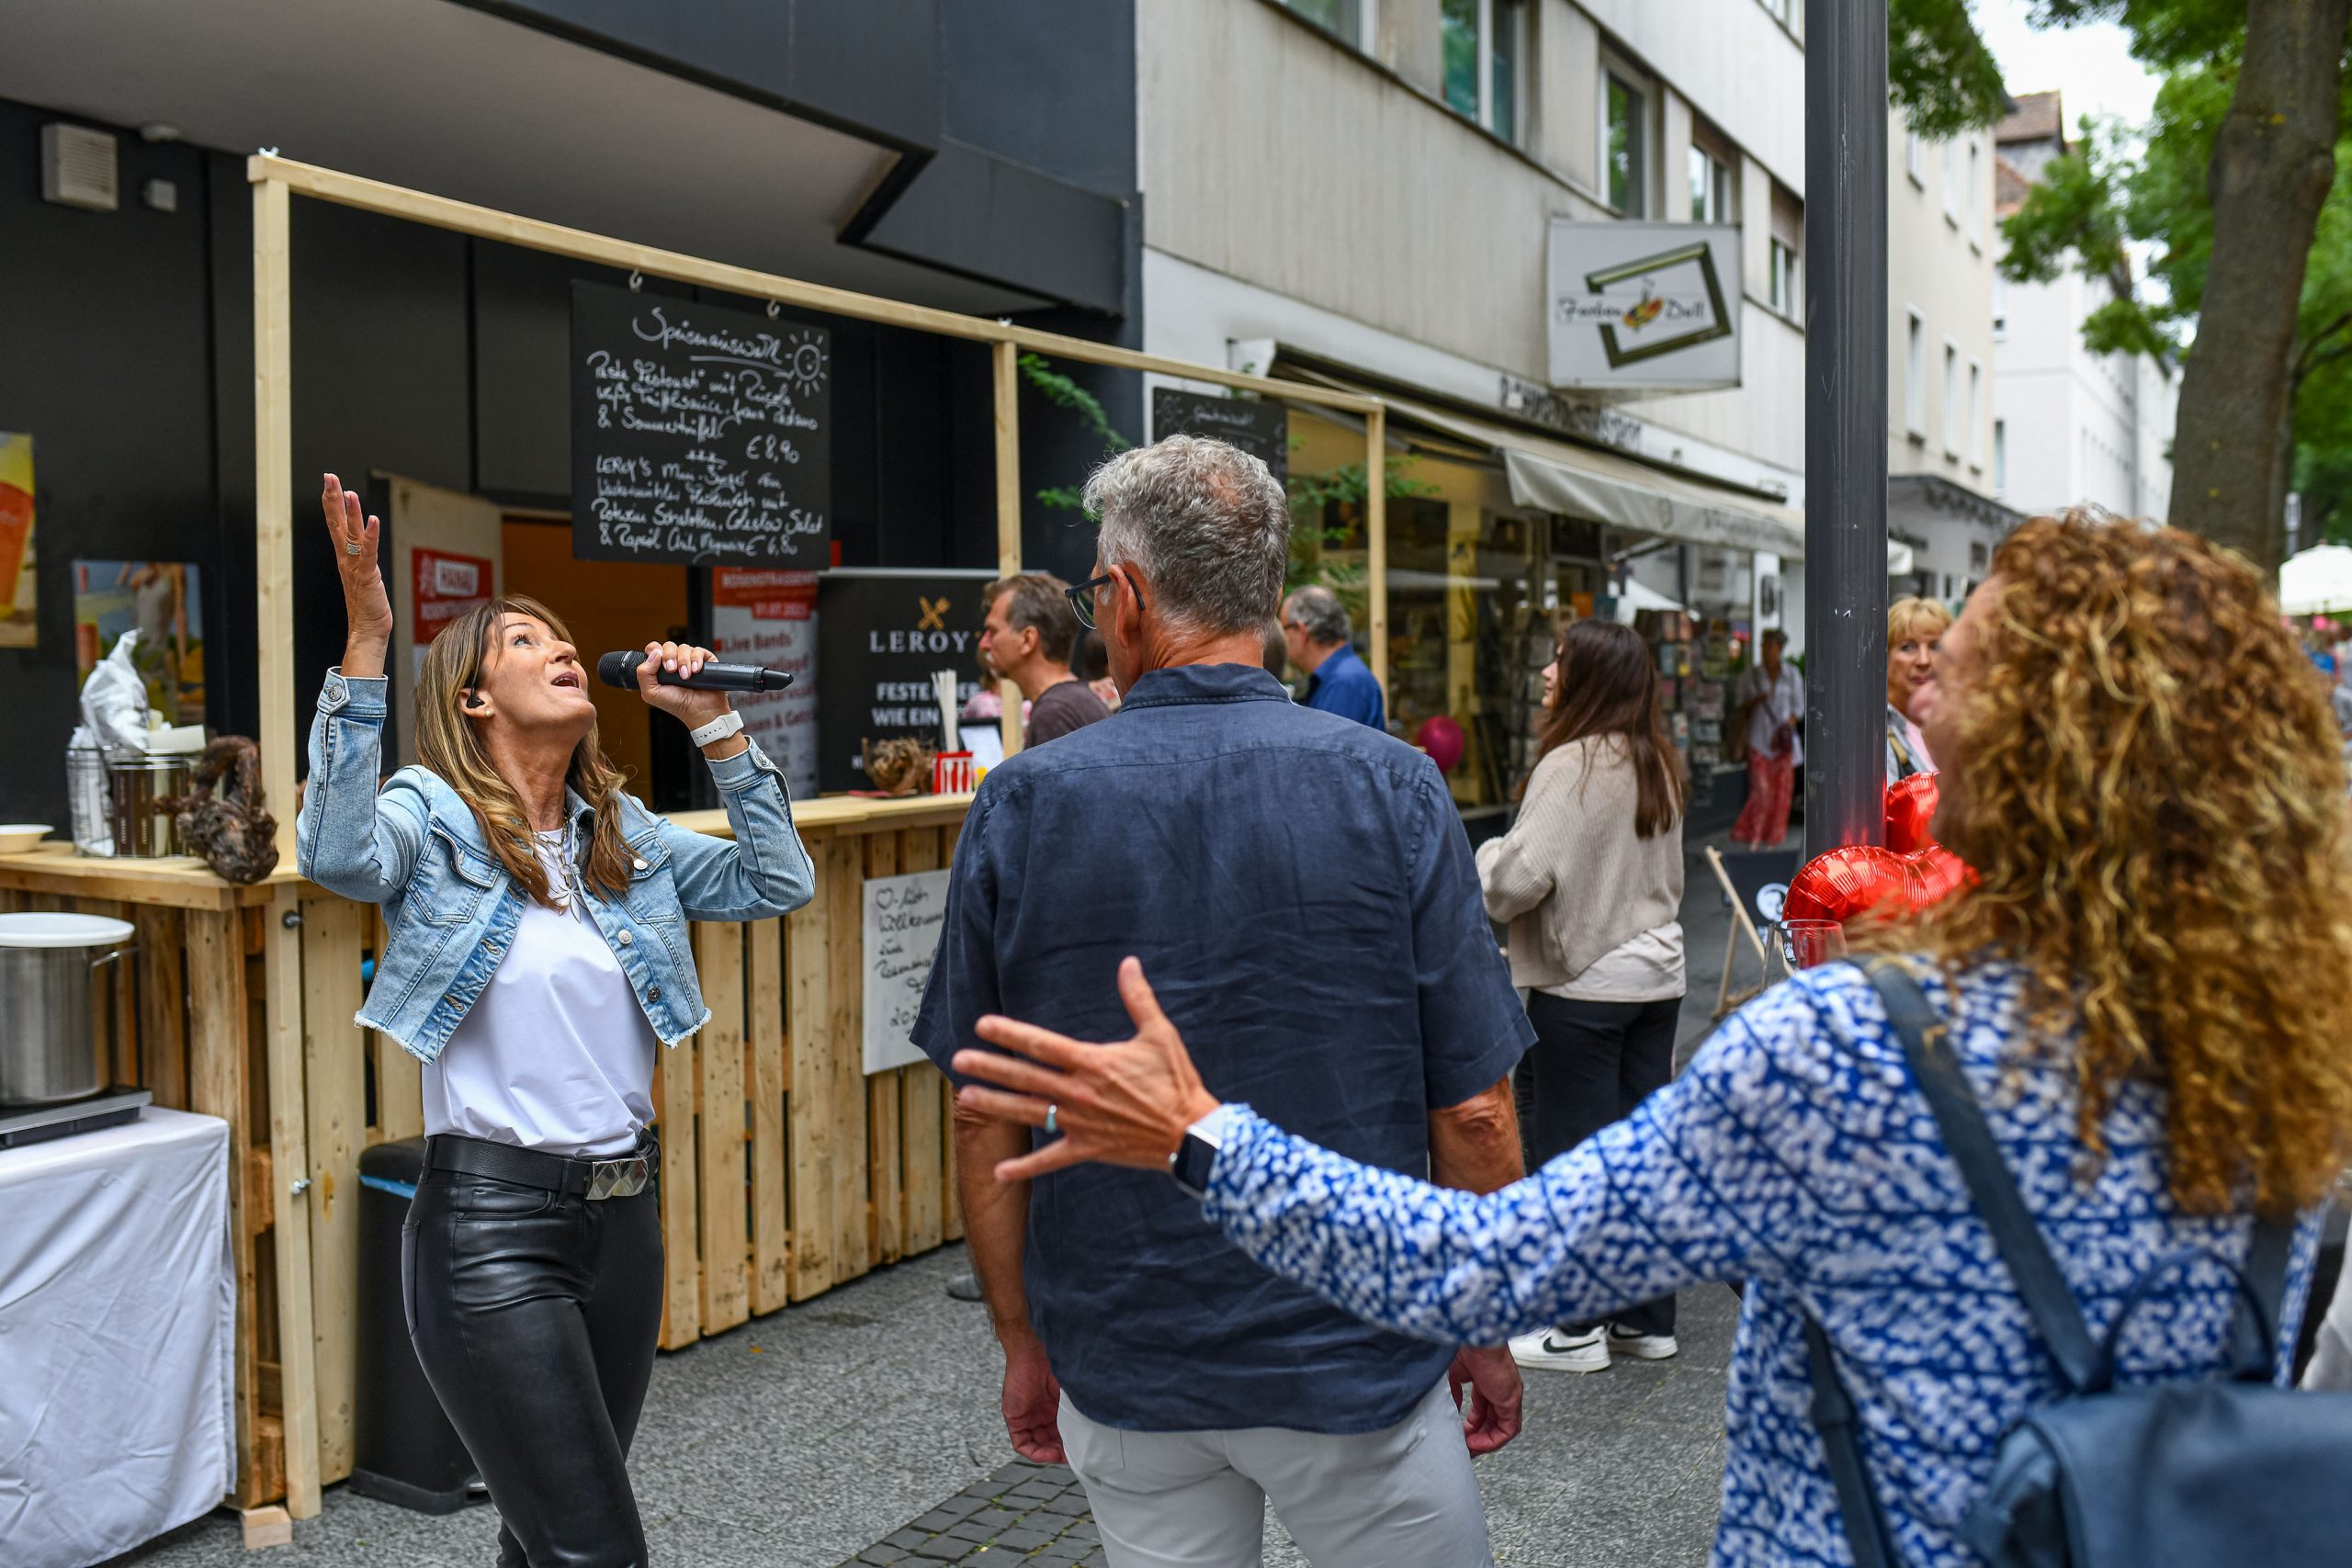 sliderimage-Veranstaltungen, wie sie die IG Rosenstraße durchführt, können künftig mit dem VeranstaltungsZUschuss gefördert werden. Foto: Moritz Göbel